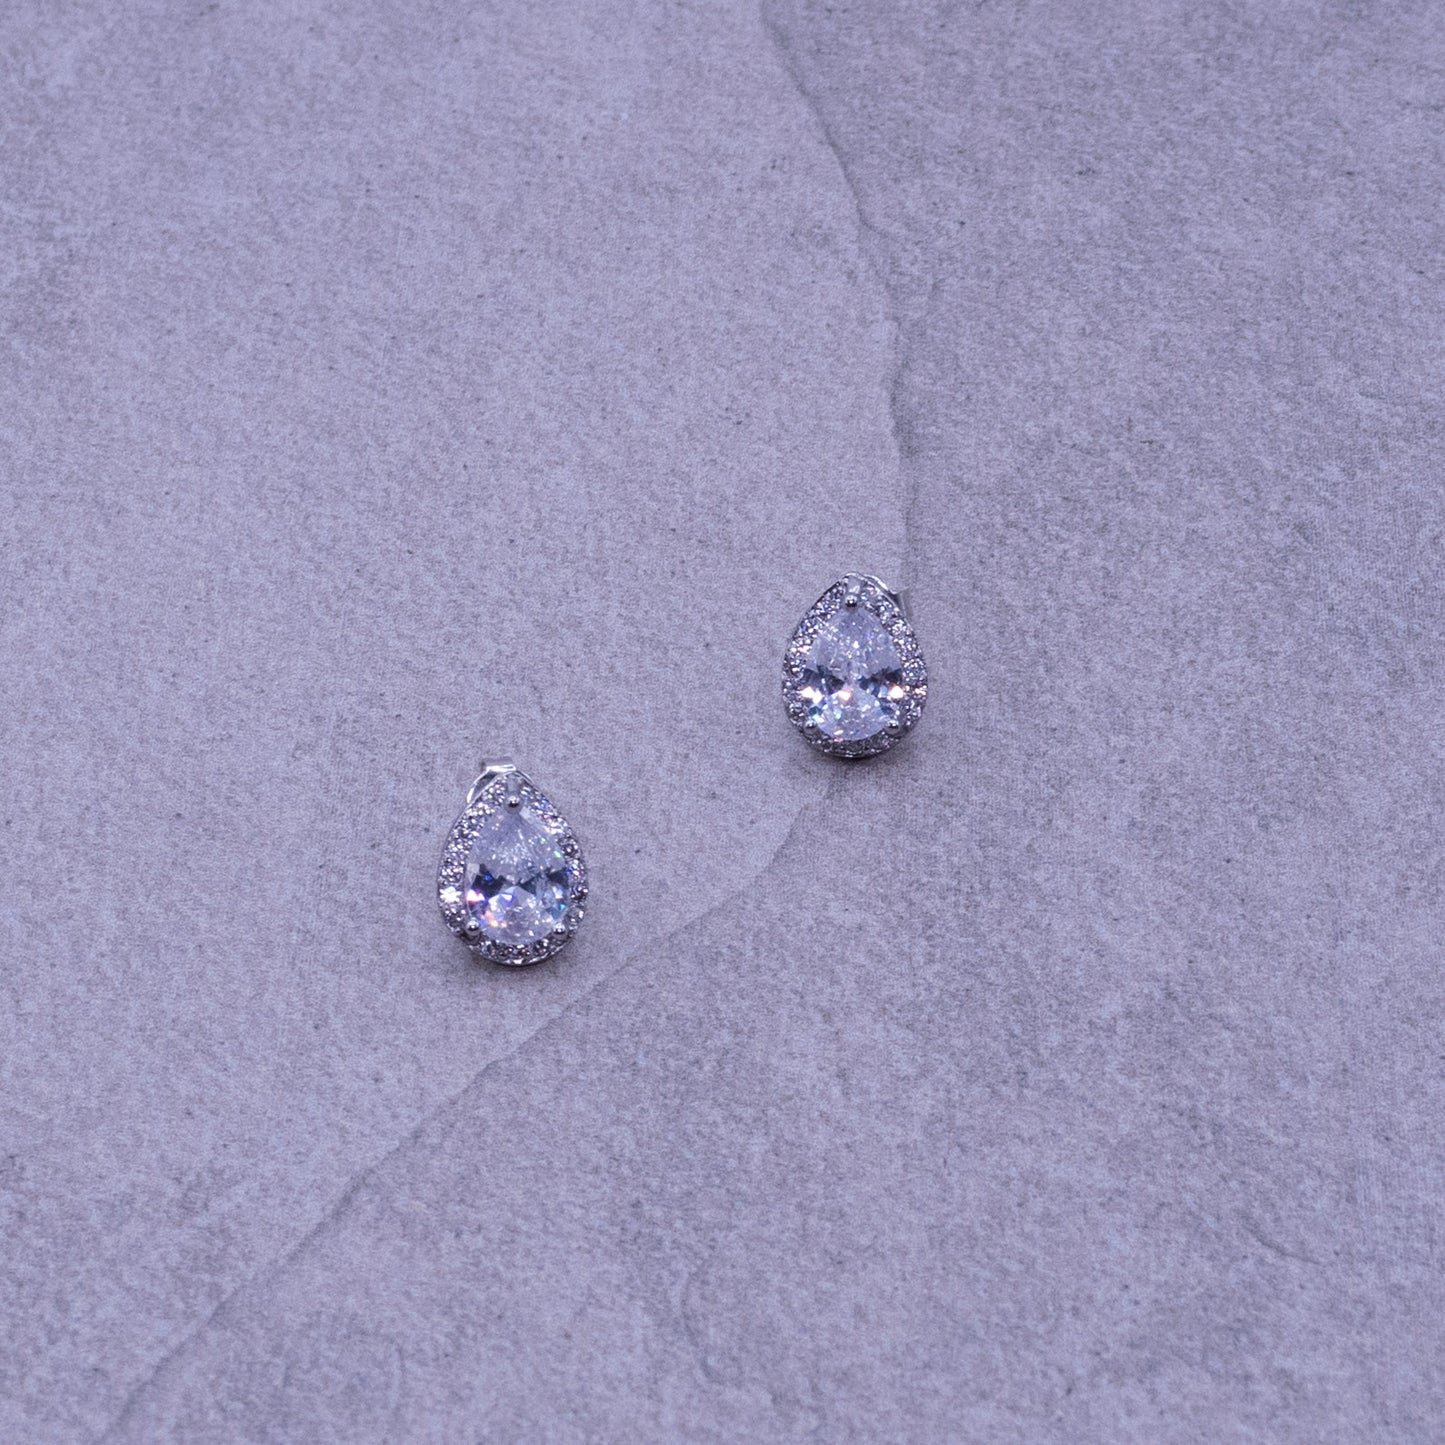 Tara tear-drop stone stud earrings